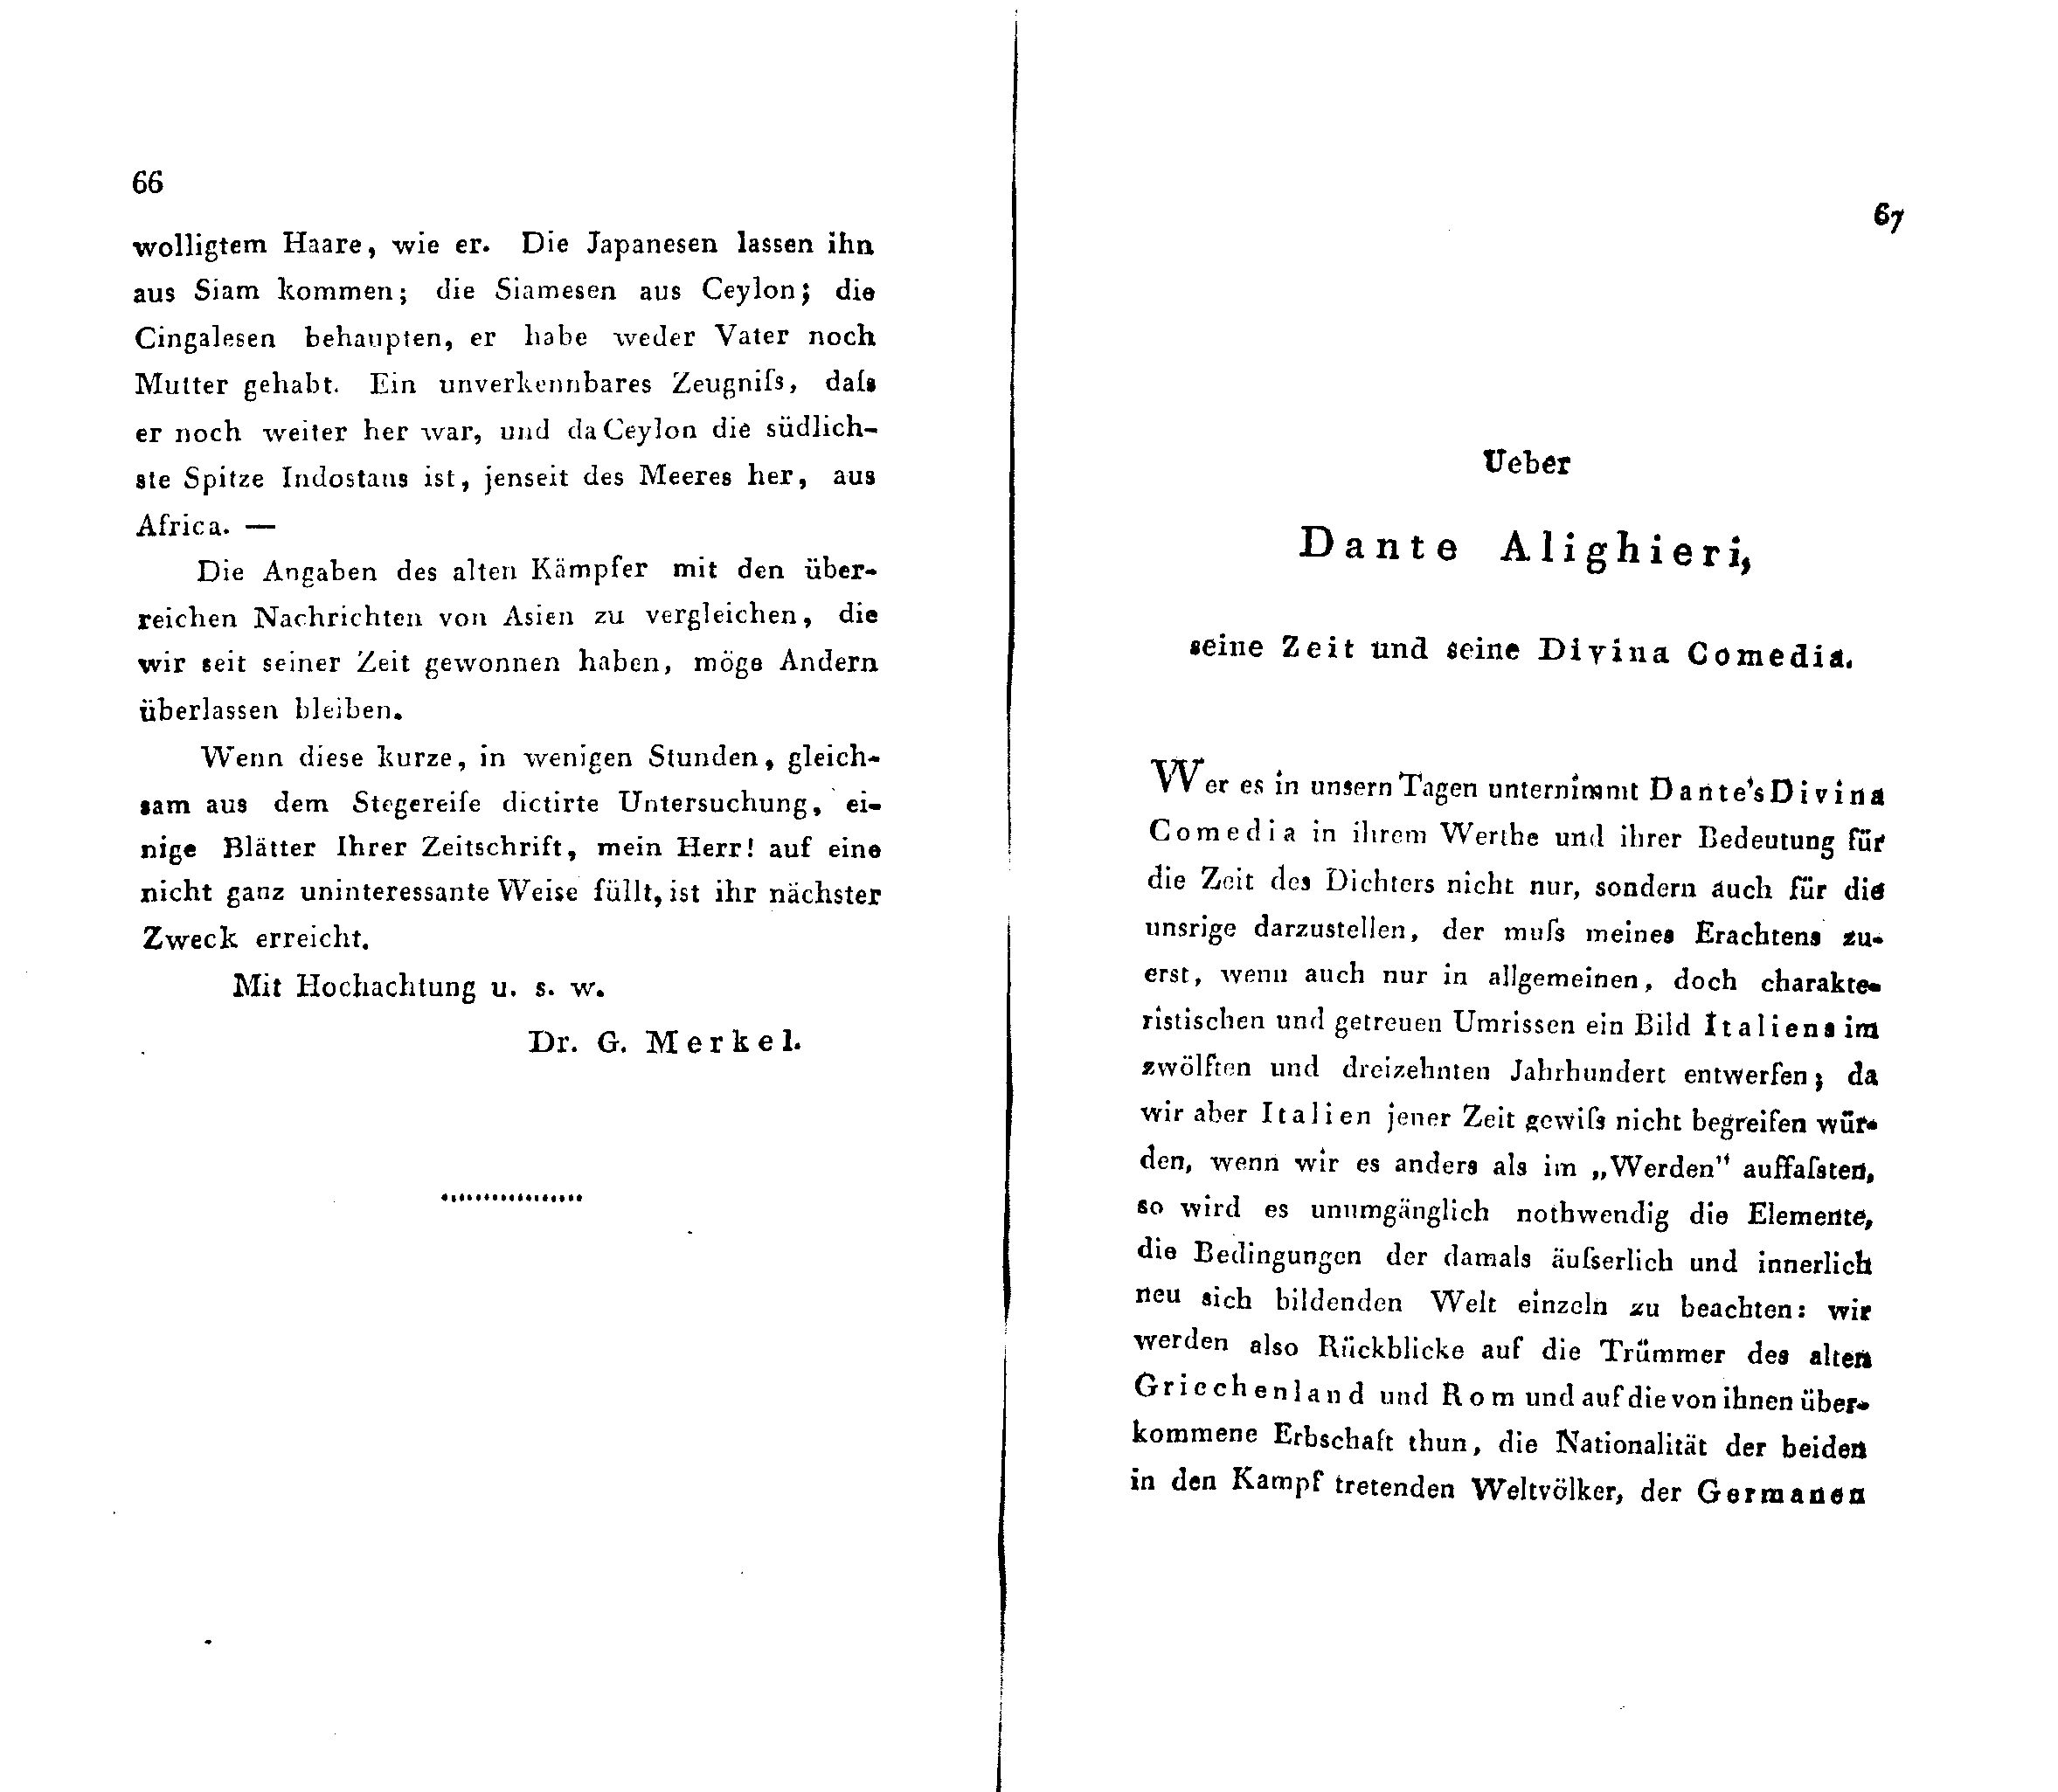 Ueber Dante Alighieri, seine Zeit und seine Divina Comedia (1824 – 1825) | 1. (66-67) Haupttext